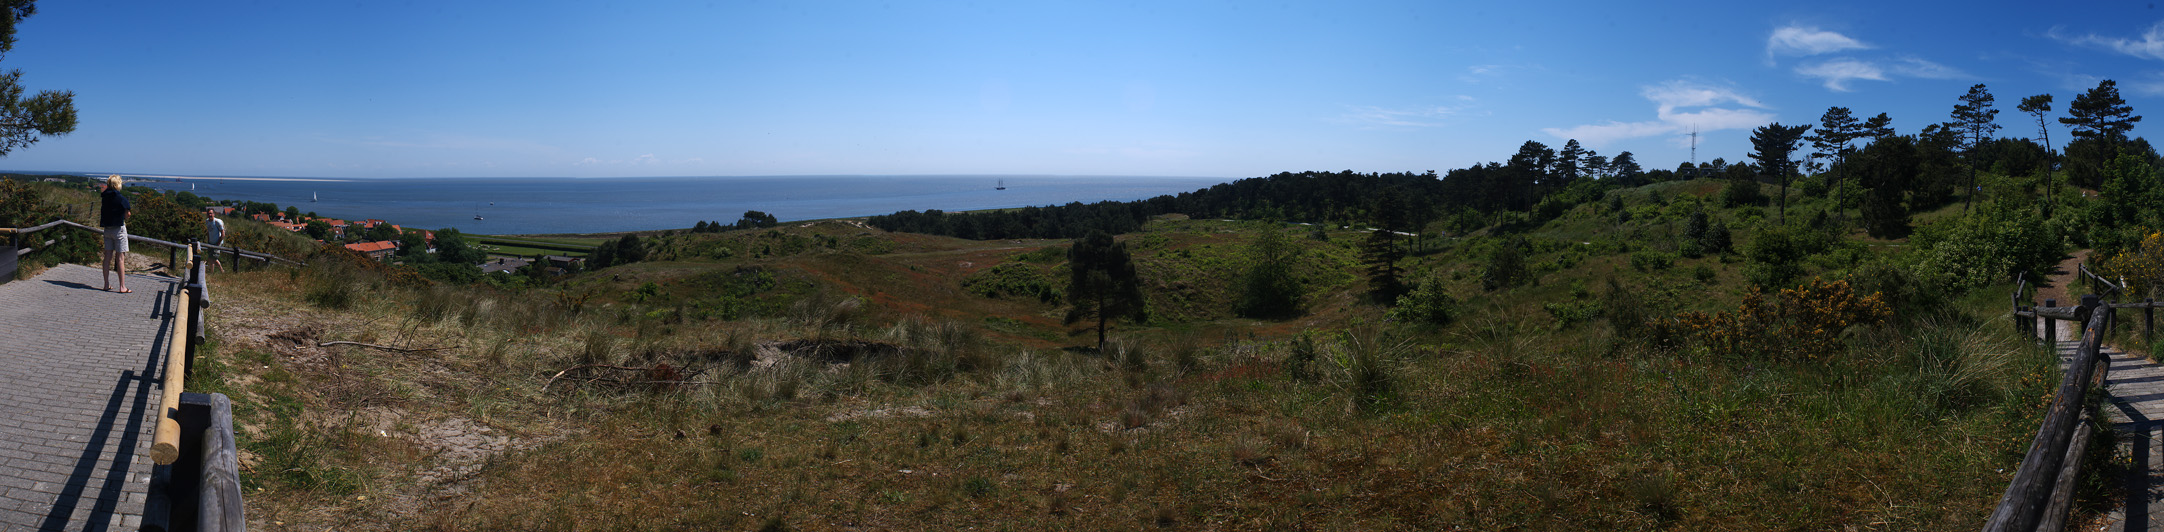 Waddenzee Panorama